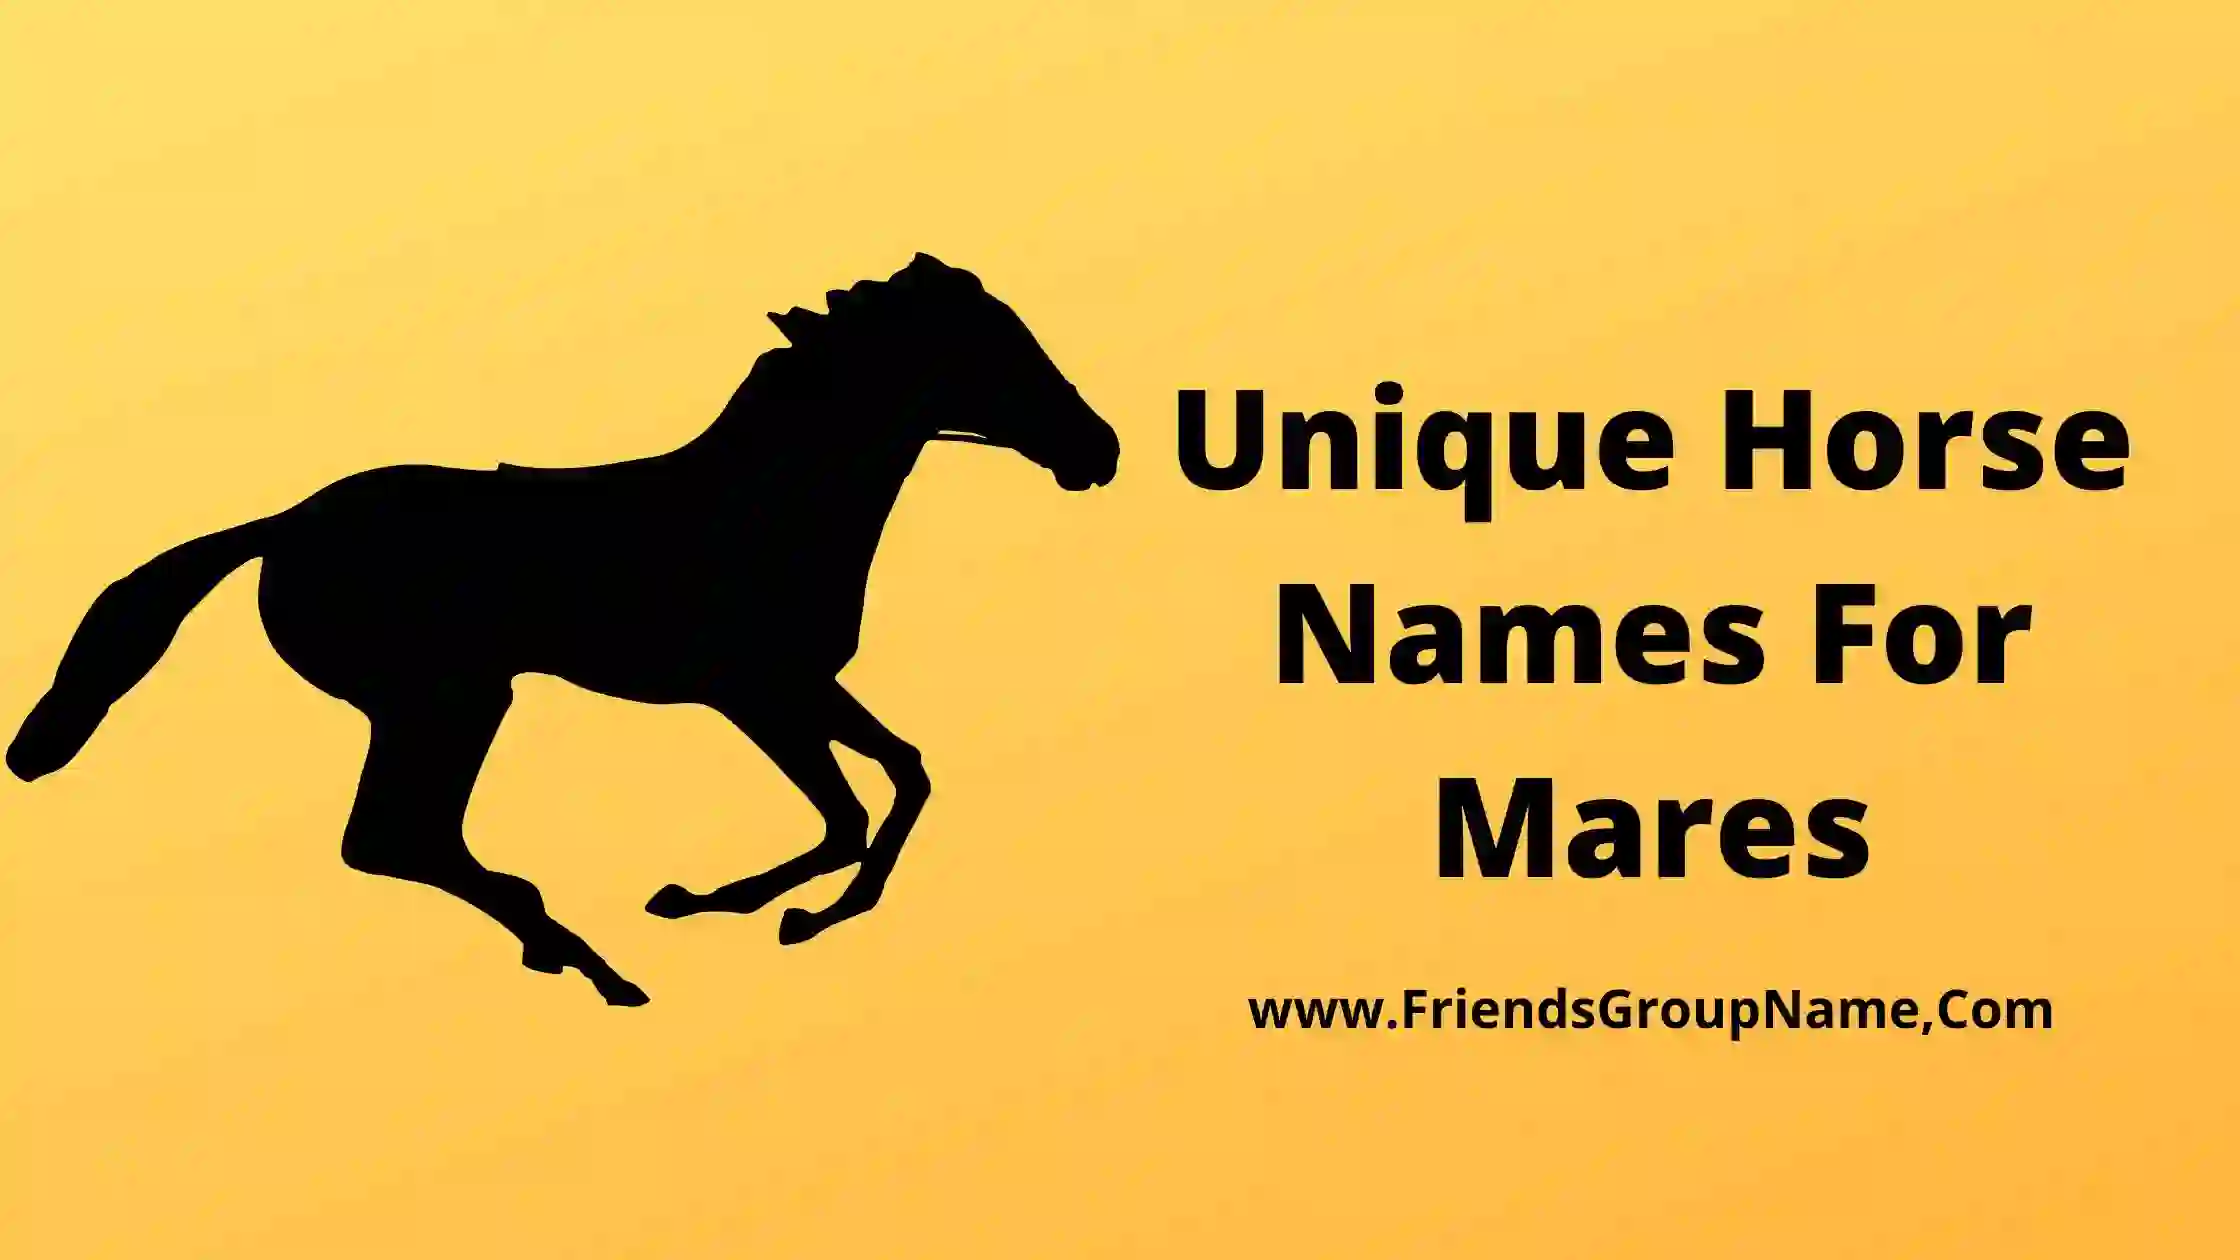 Unique Horse Names For Mares